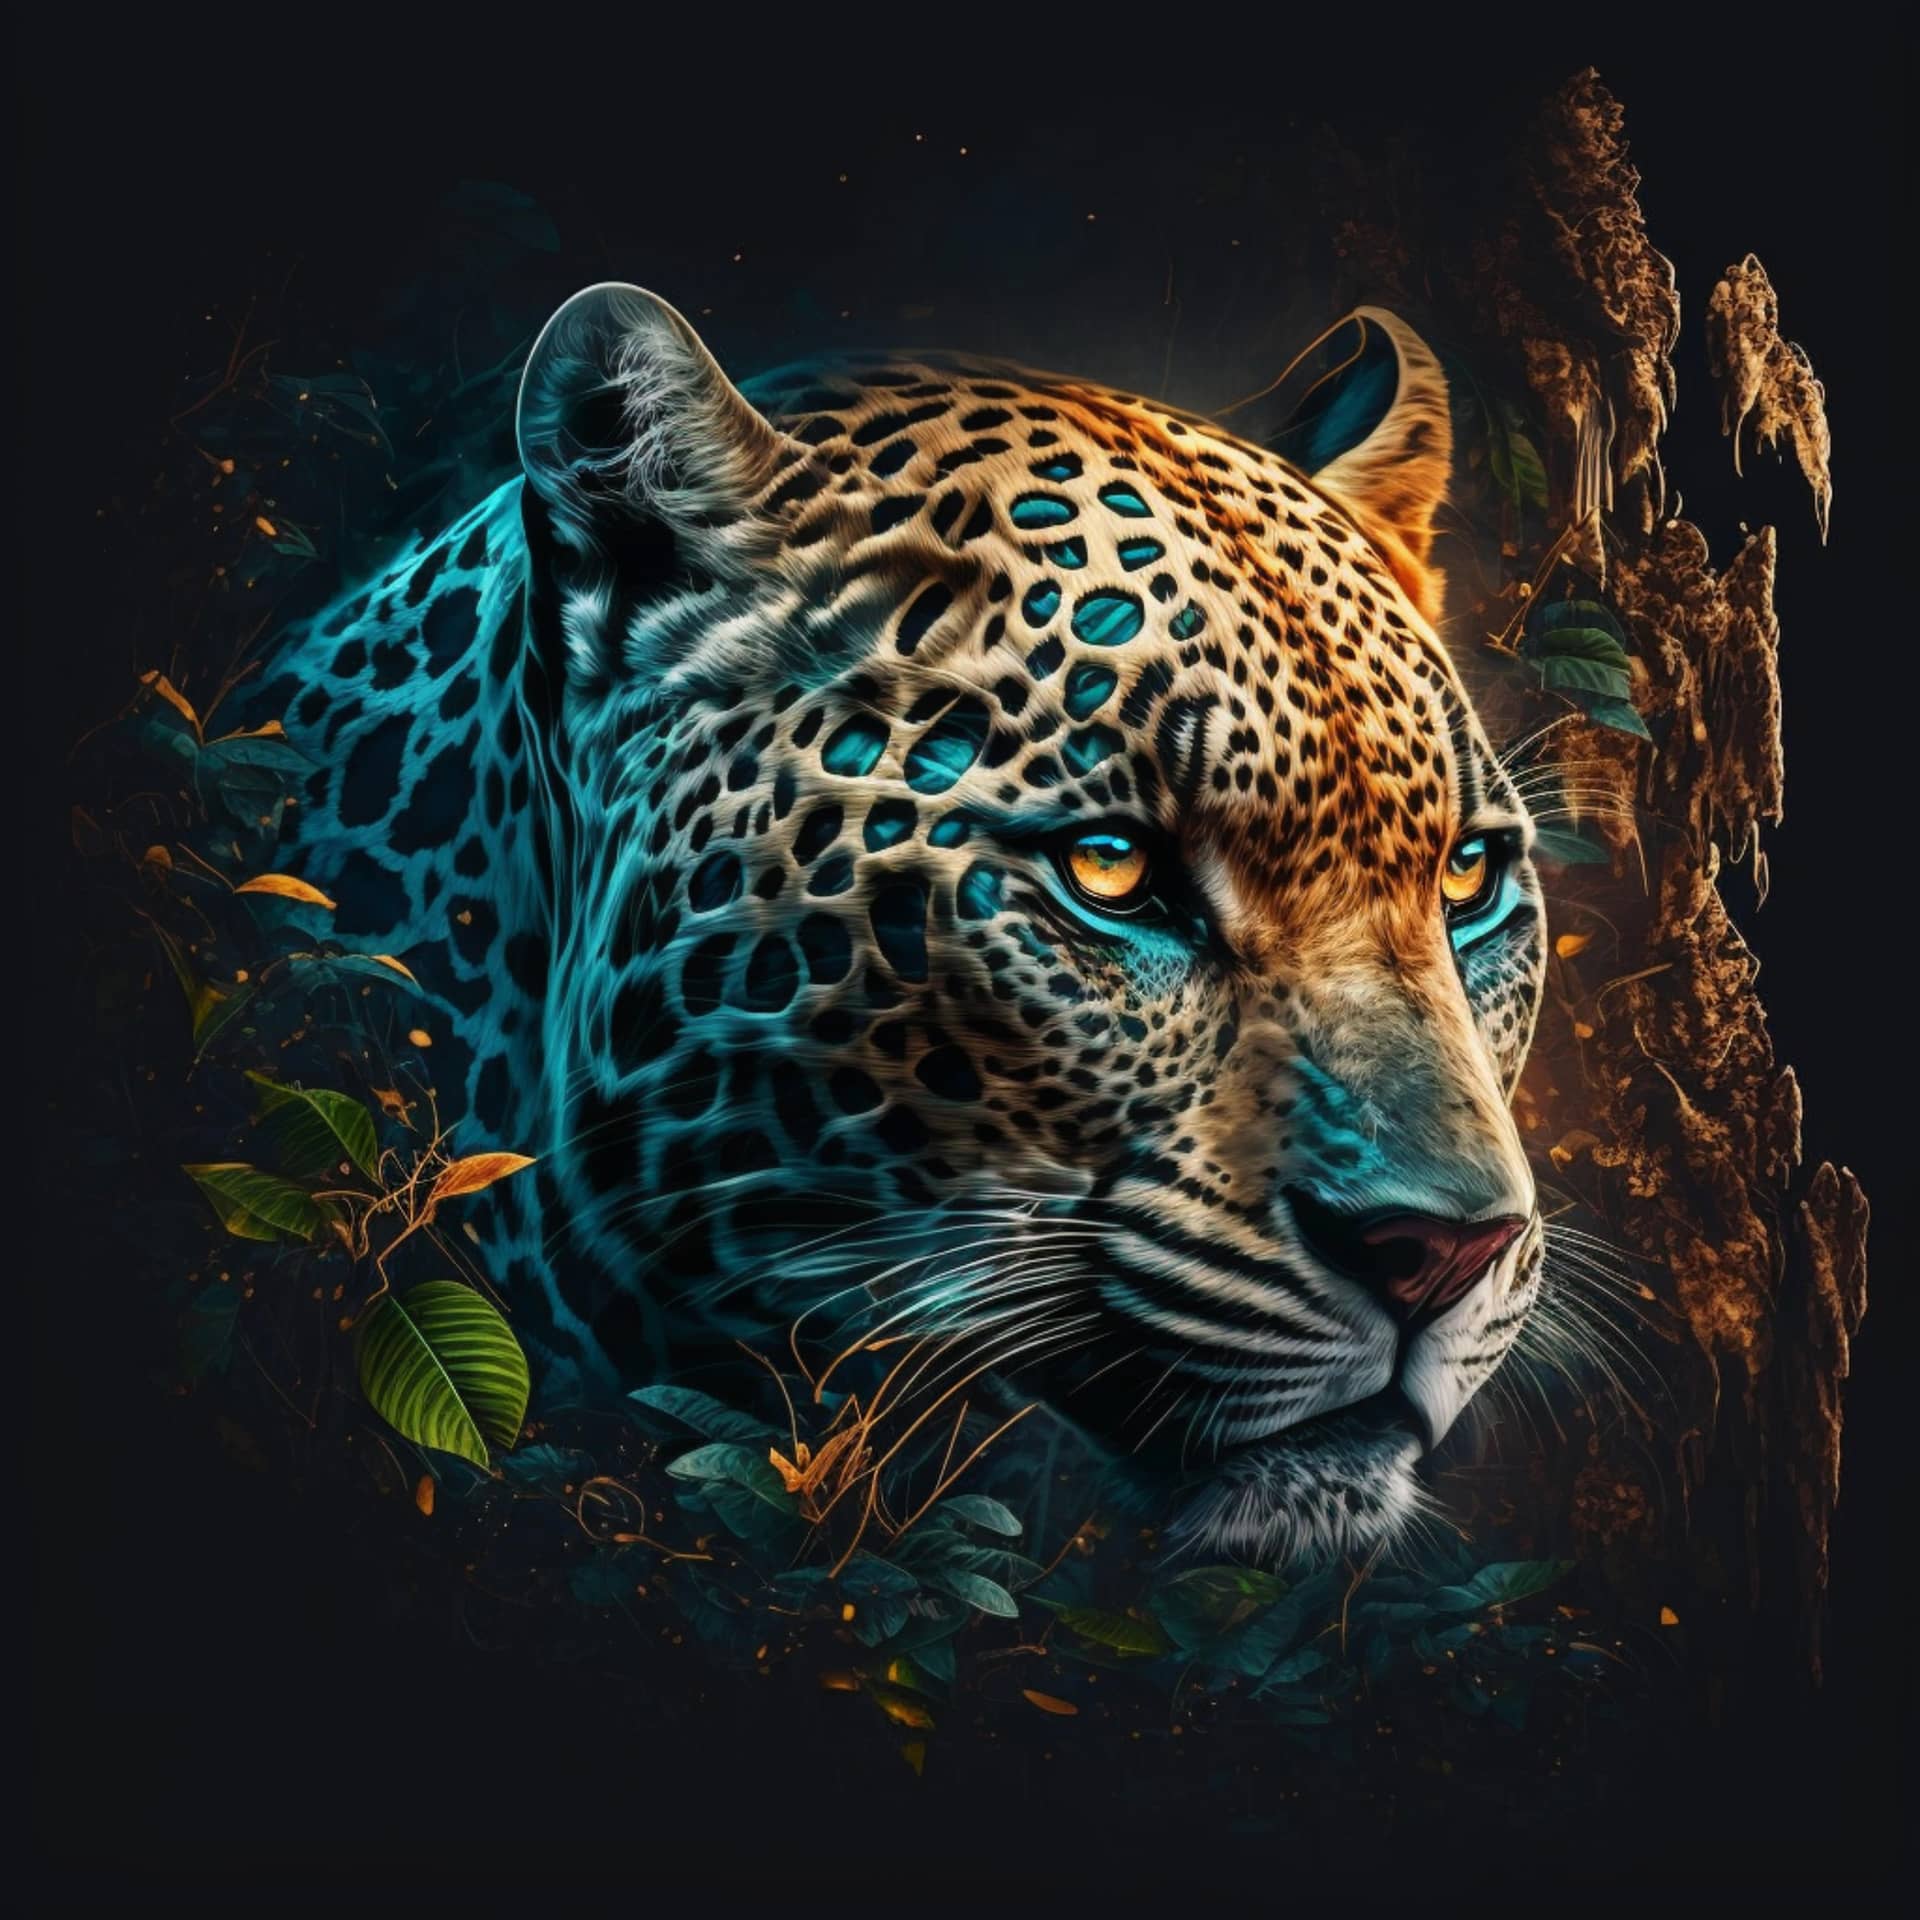 Digital design jaguar looking camera nice image